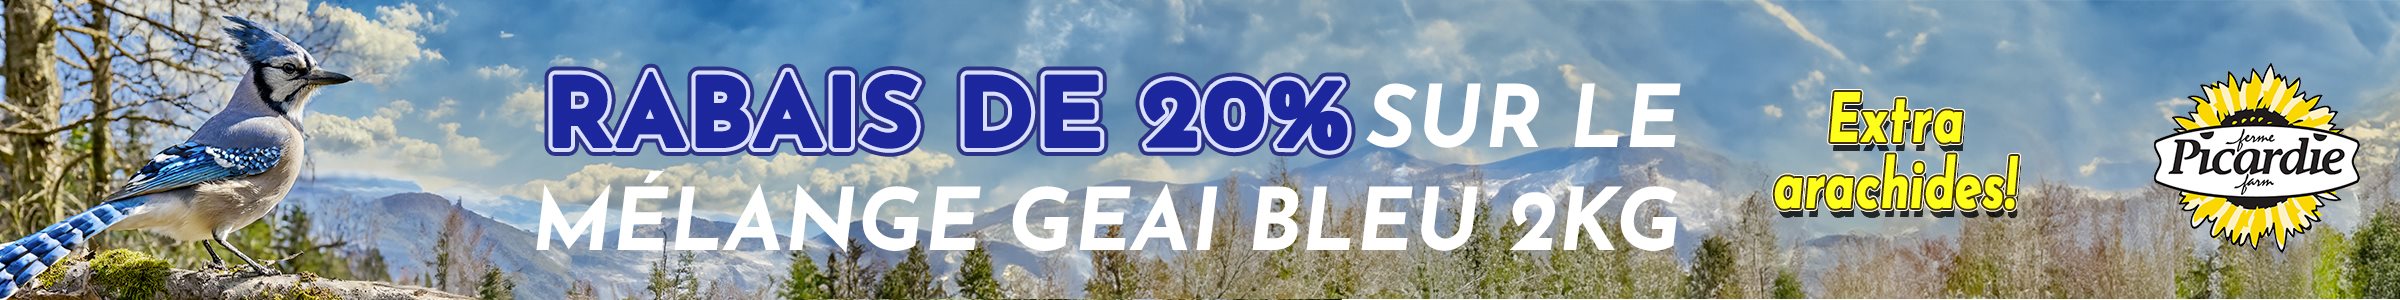 Rabais sur le mélange Geai bleu, offre expire le 30 avril